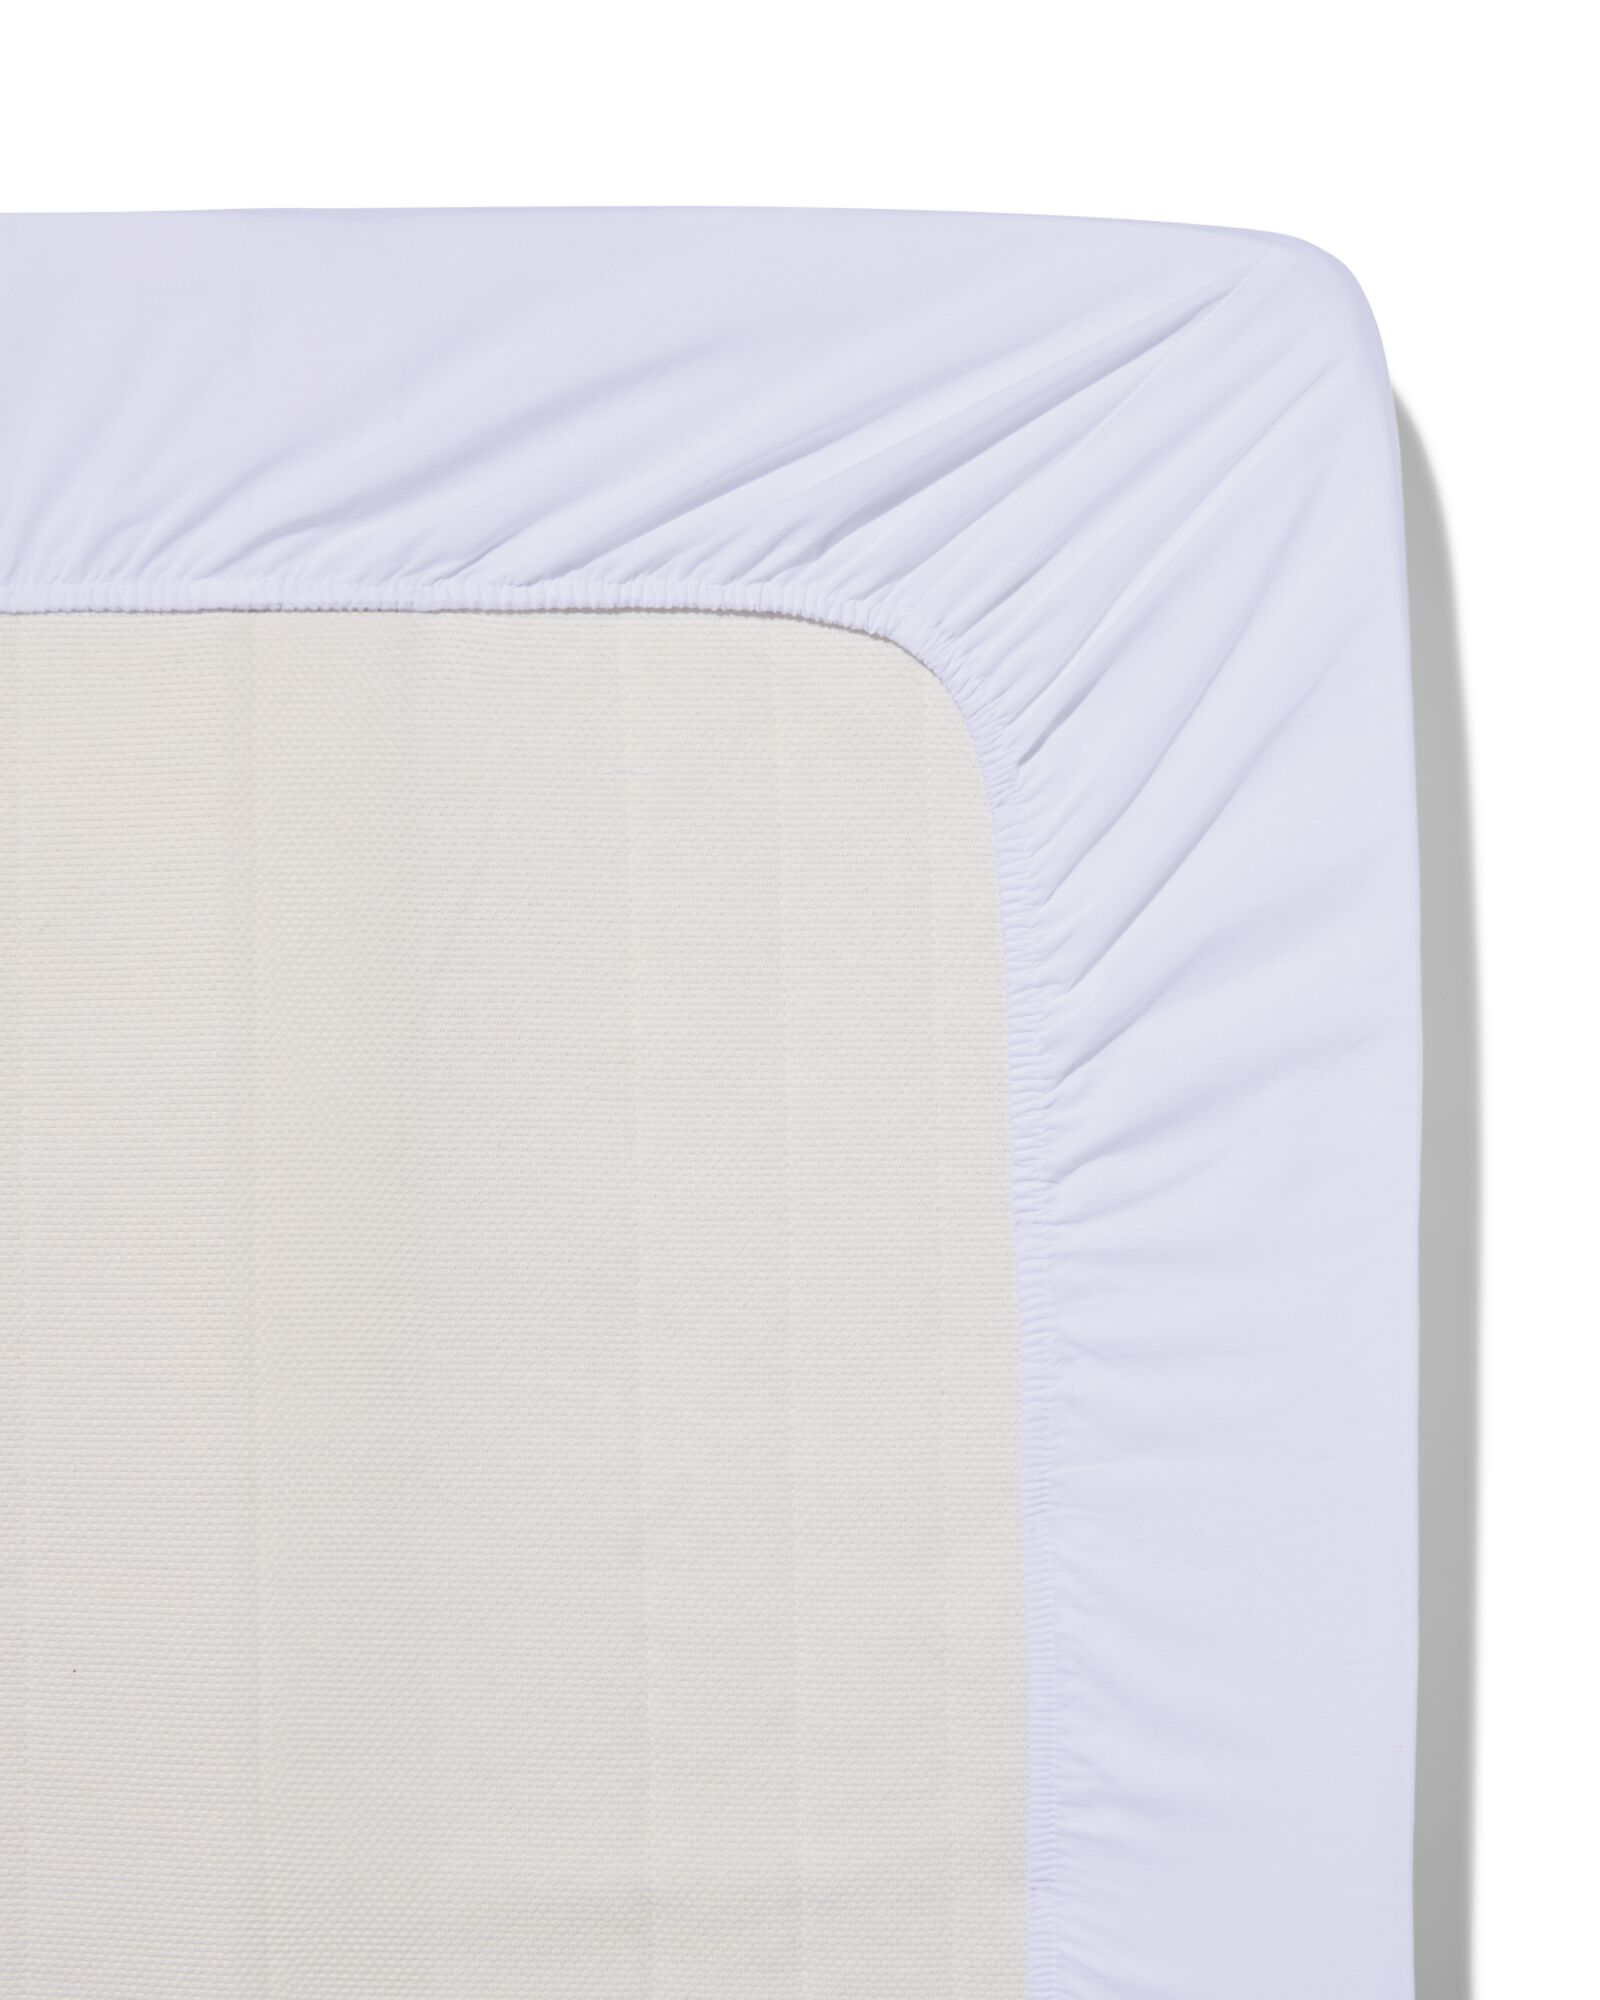 Spannbettlaken, Soft Cotton, 180 x 220 cm, weiß - 5190034 - HEMA